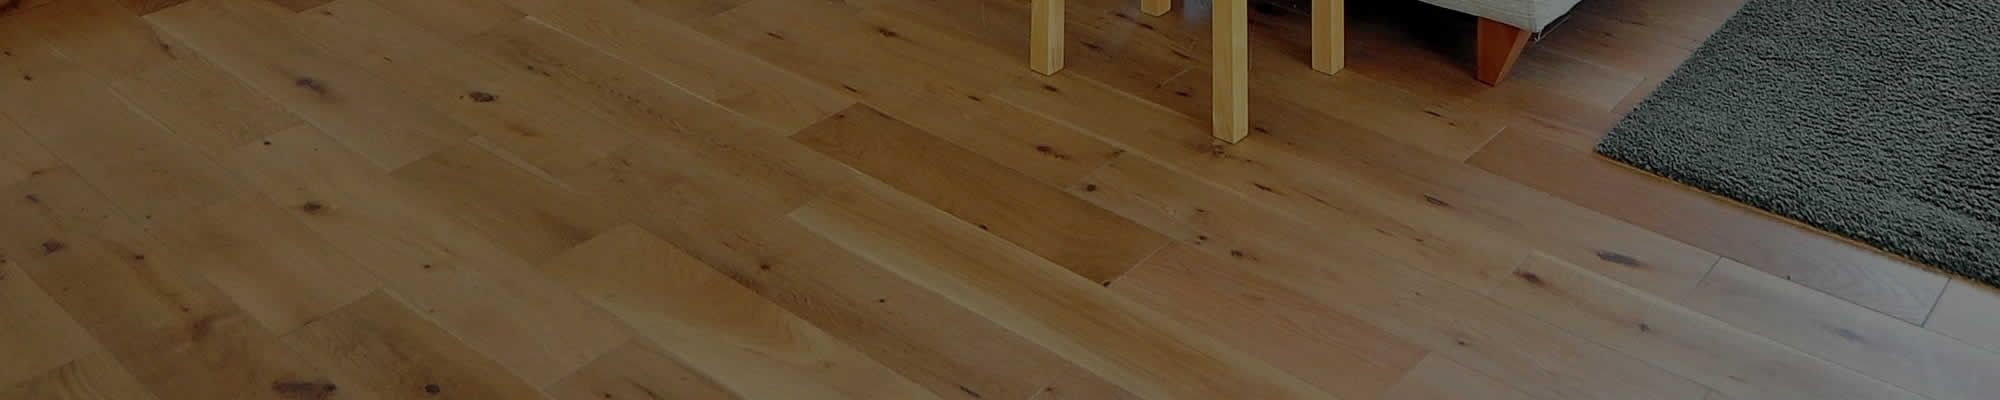 Hardwood Floor Refinishing WI